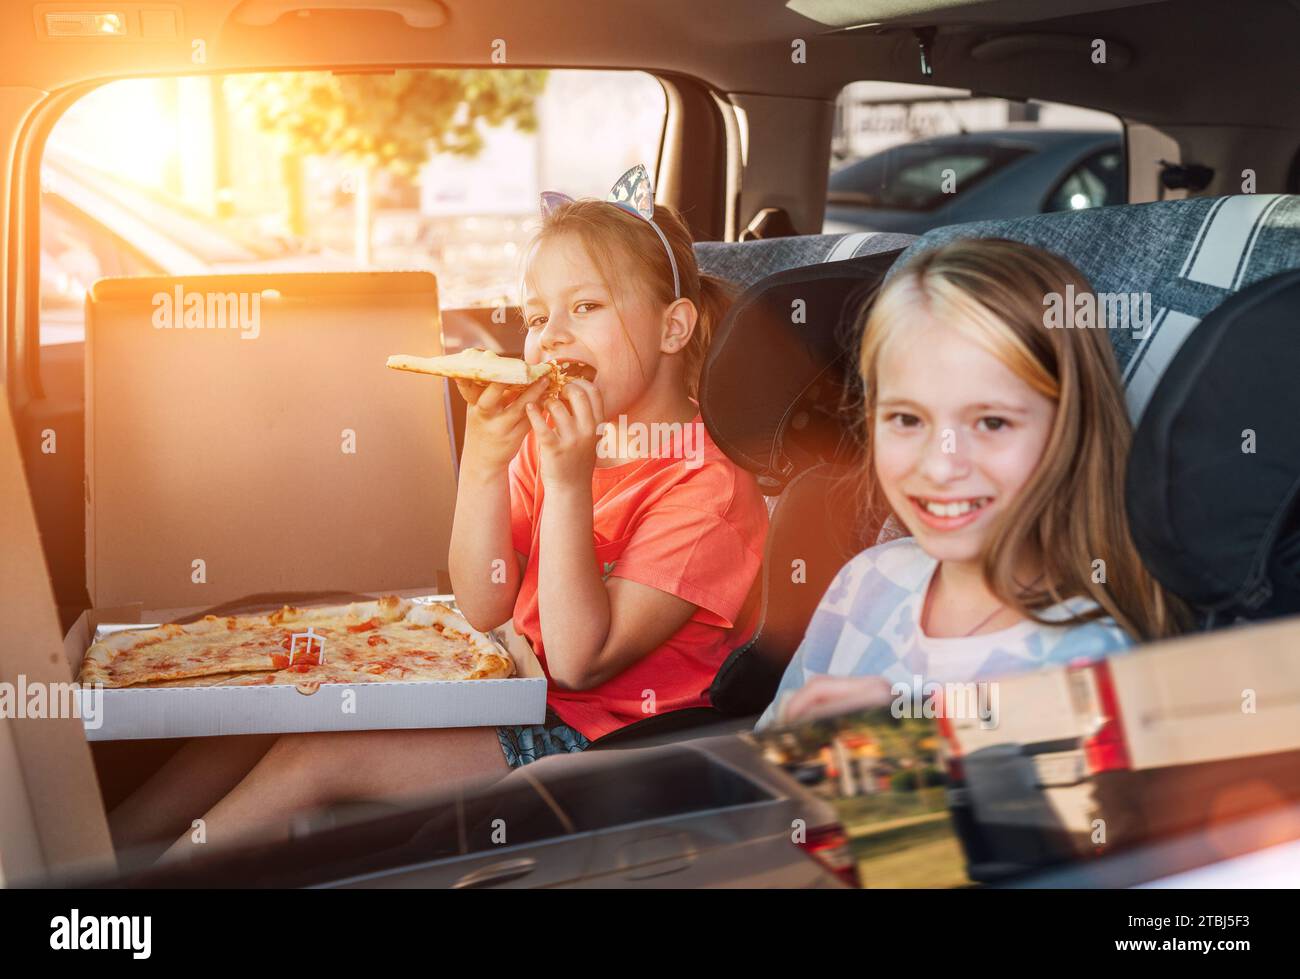 Deux sœurs souriantes et positives sont heureuses de manger une pizza italienne juste cuite dans les sièges d'enfant sur le siège arrière de la voiture. Bonne enfance, restauration rapide ea Banque D'Images